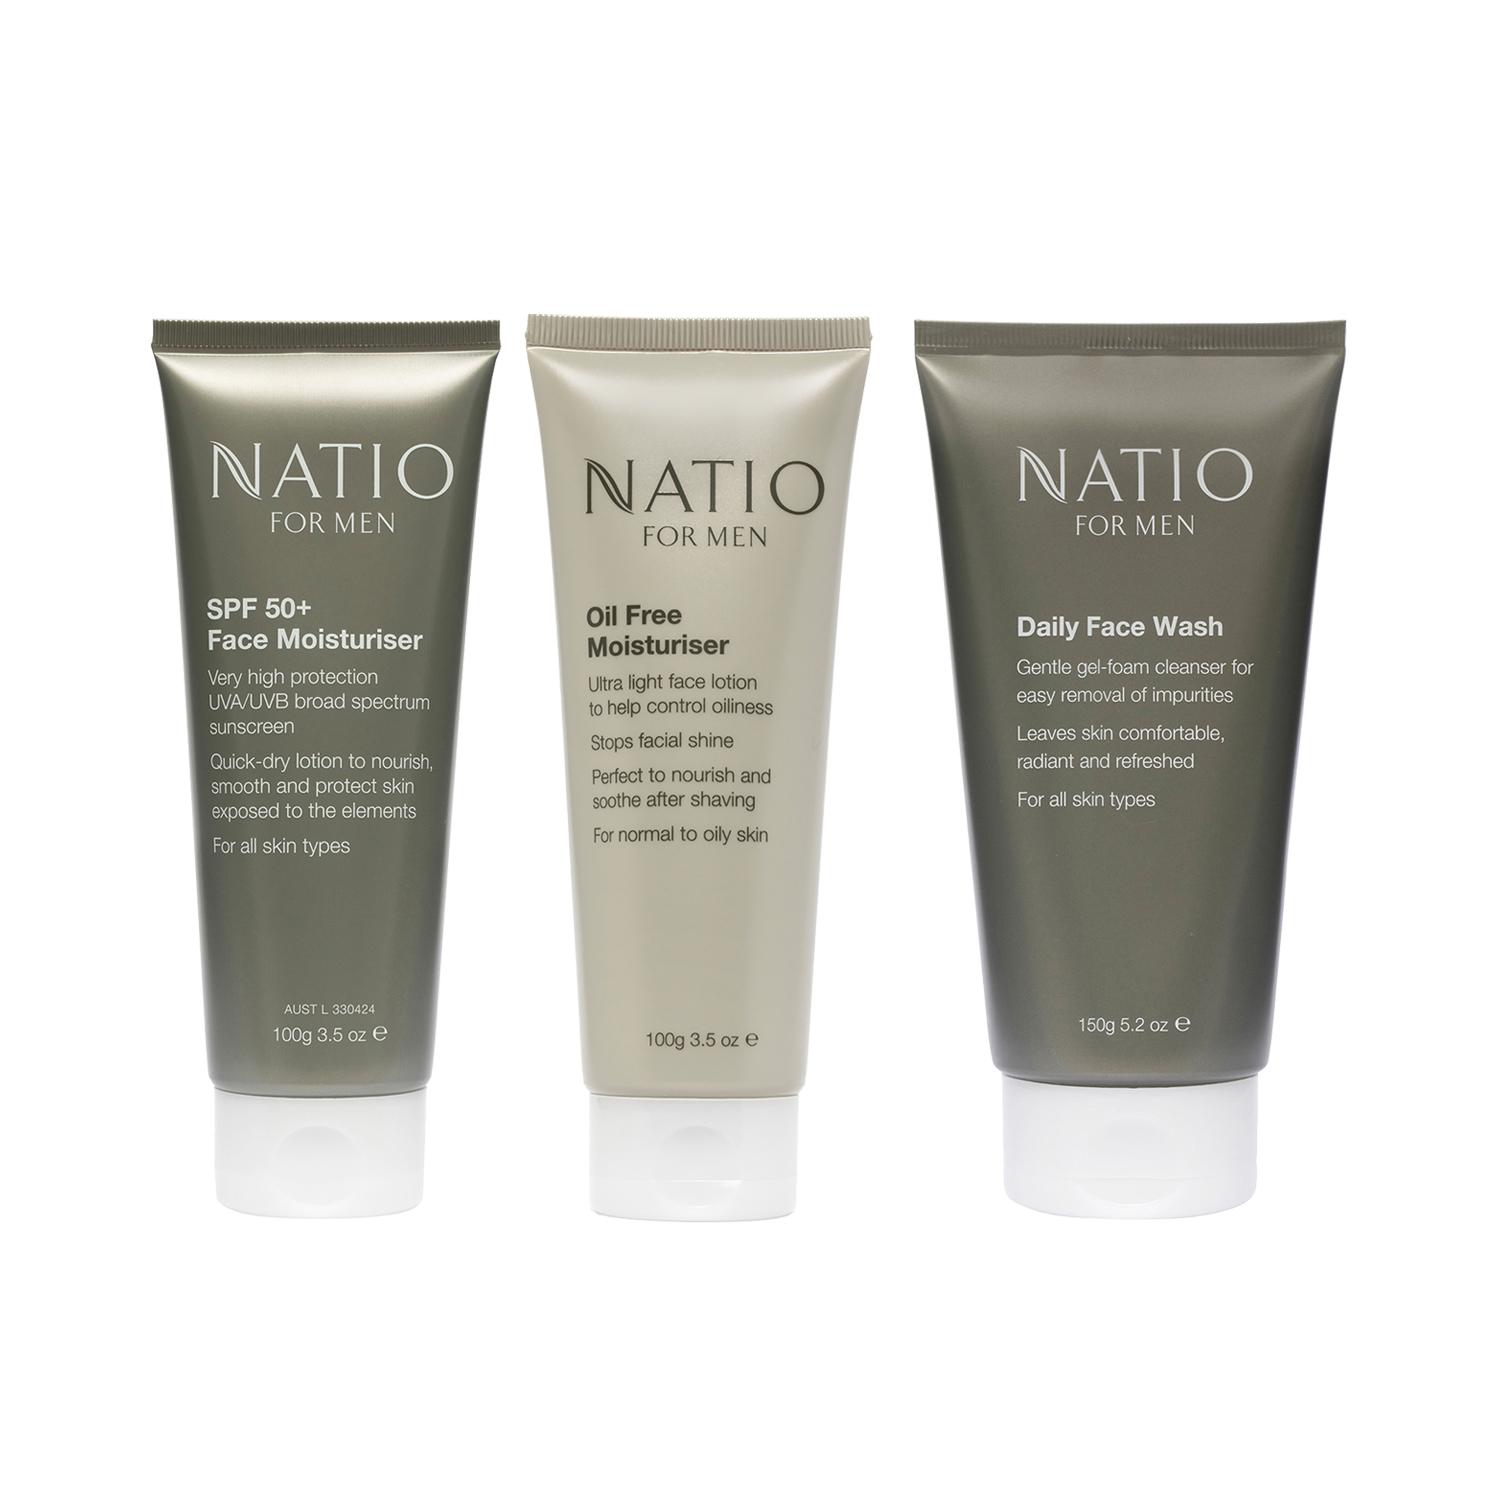 Natio Oil Free Moisturiser (100 g), SPF 50+ Face Moisturiser (100 g) & Daily Face Wash (150 g) Combo